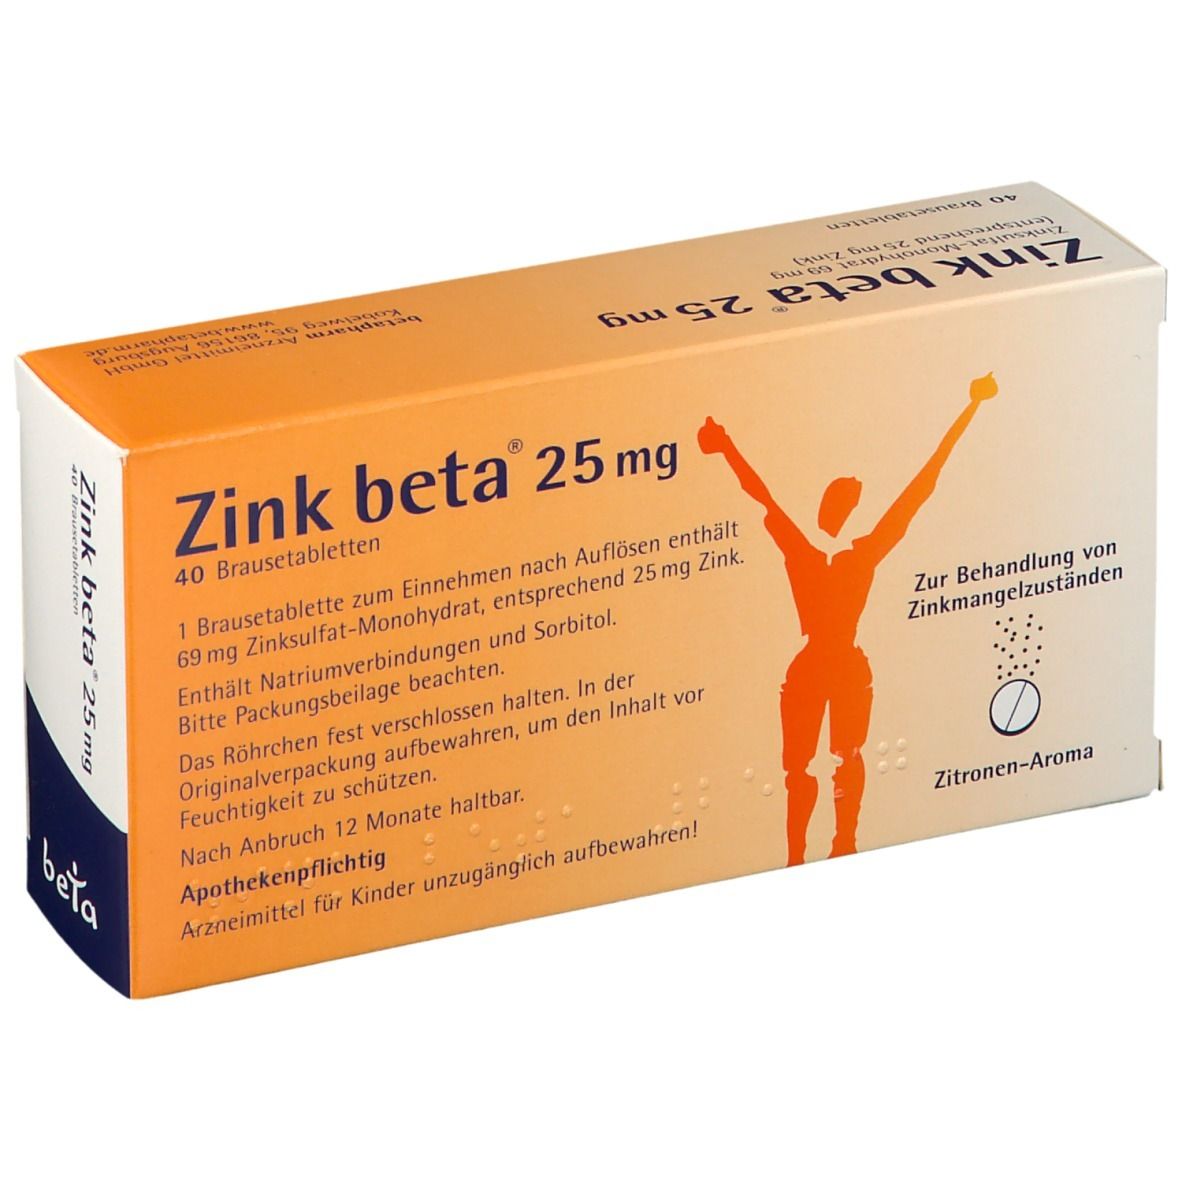 Zink beta® 25 Brausetabletten